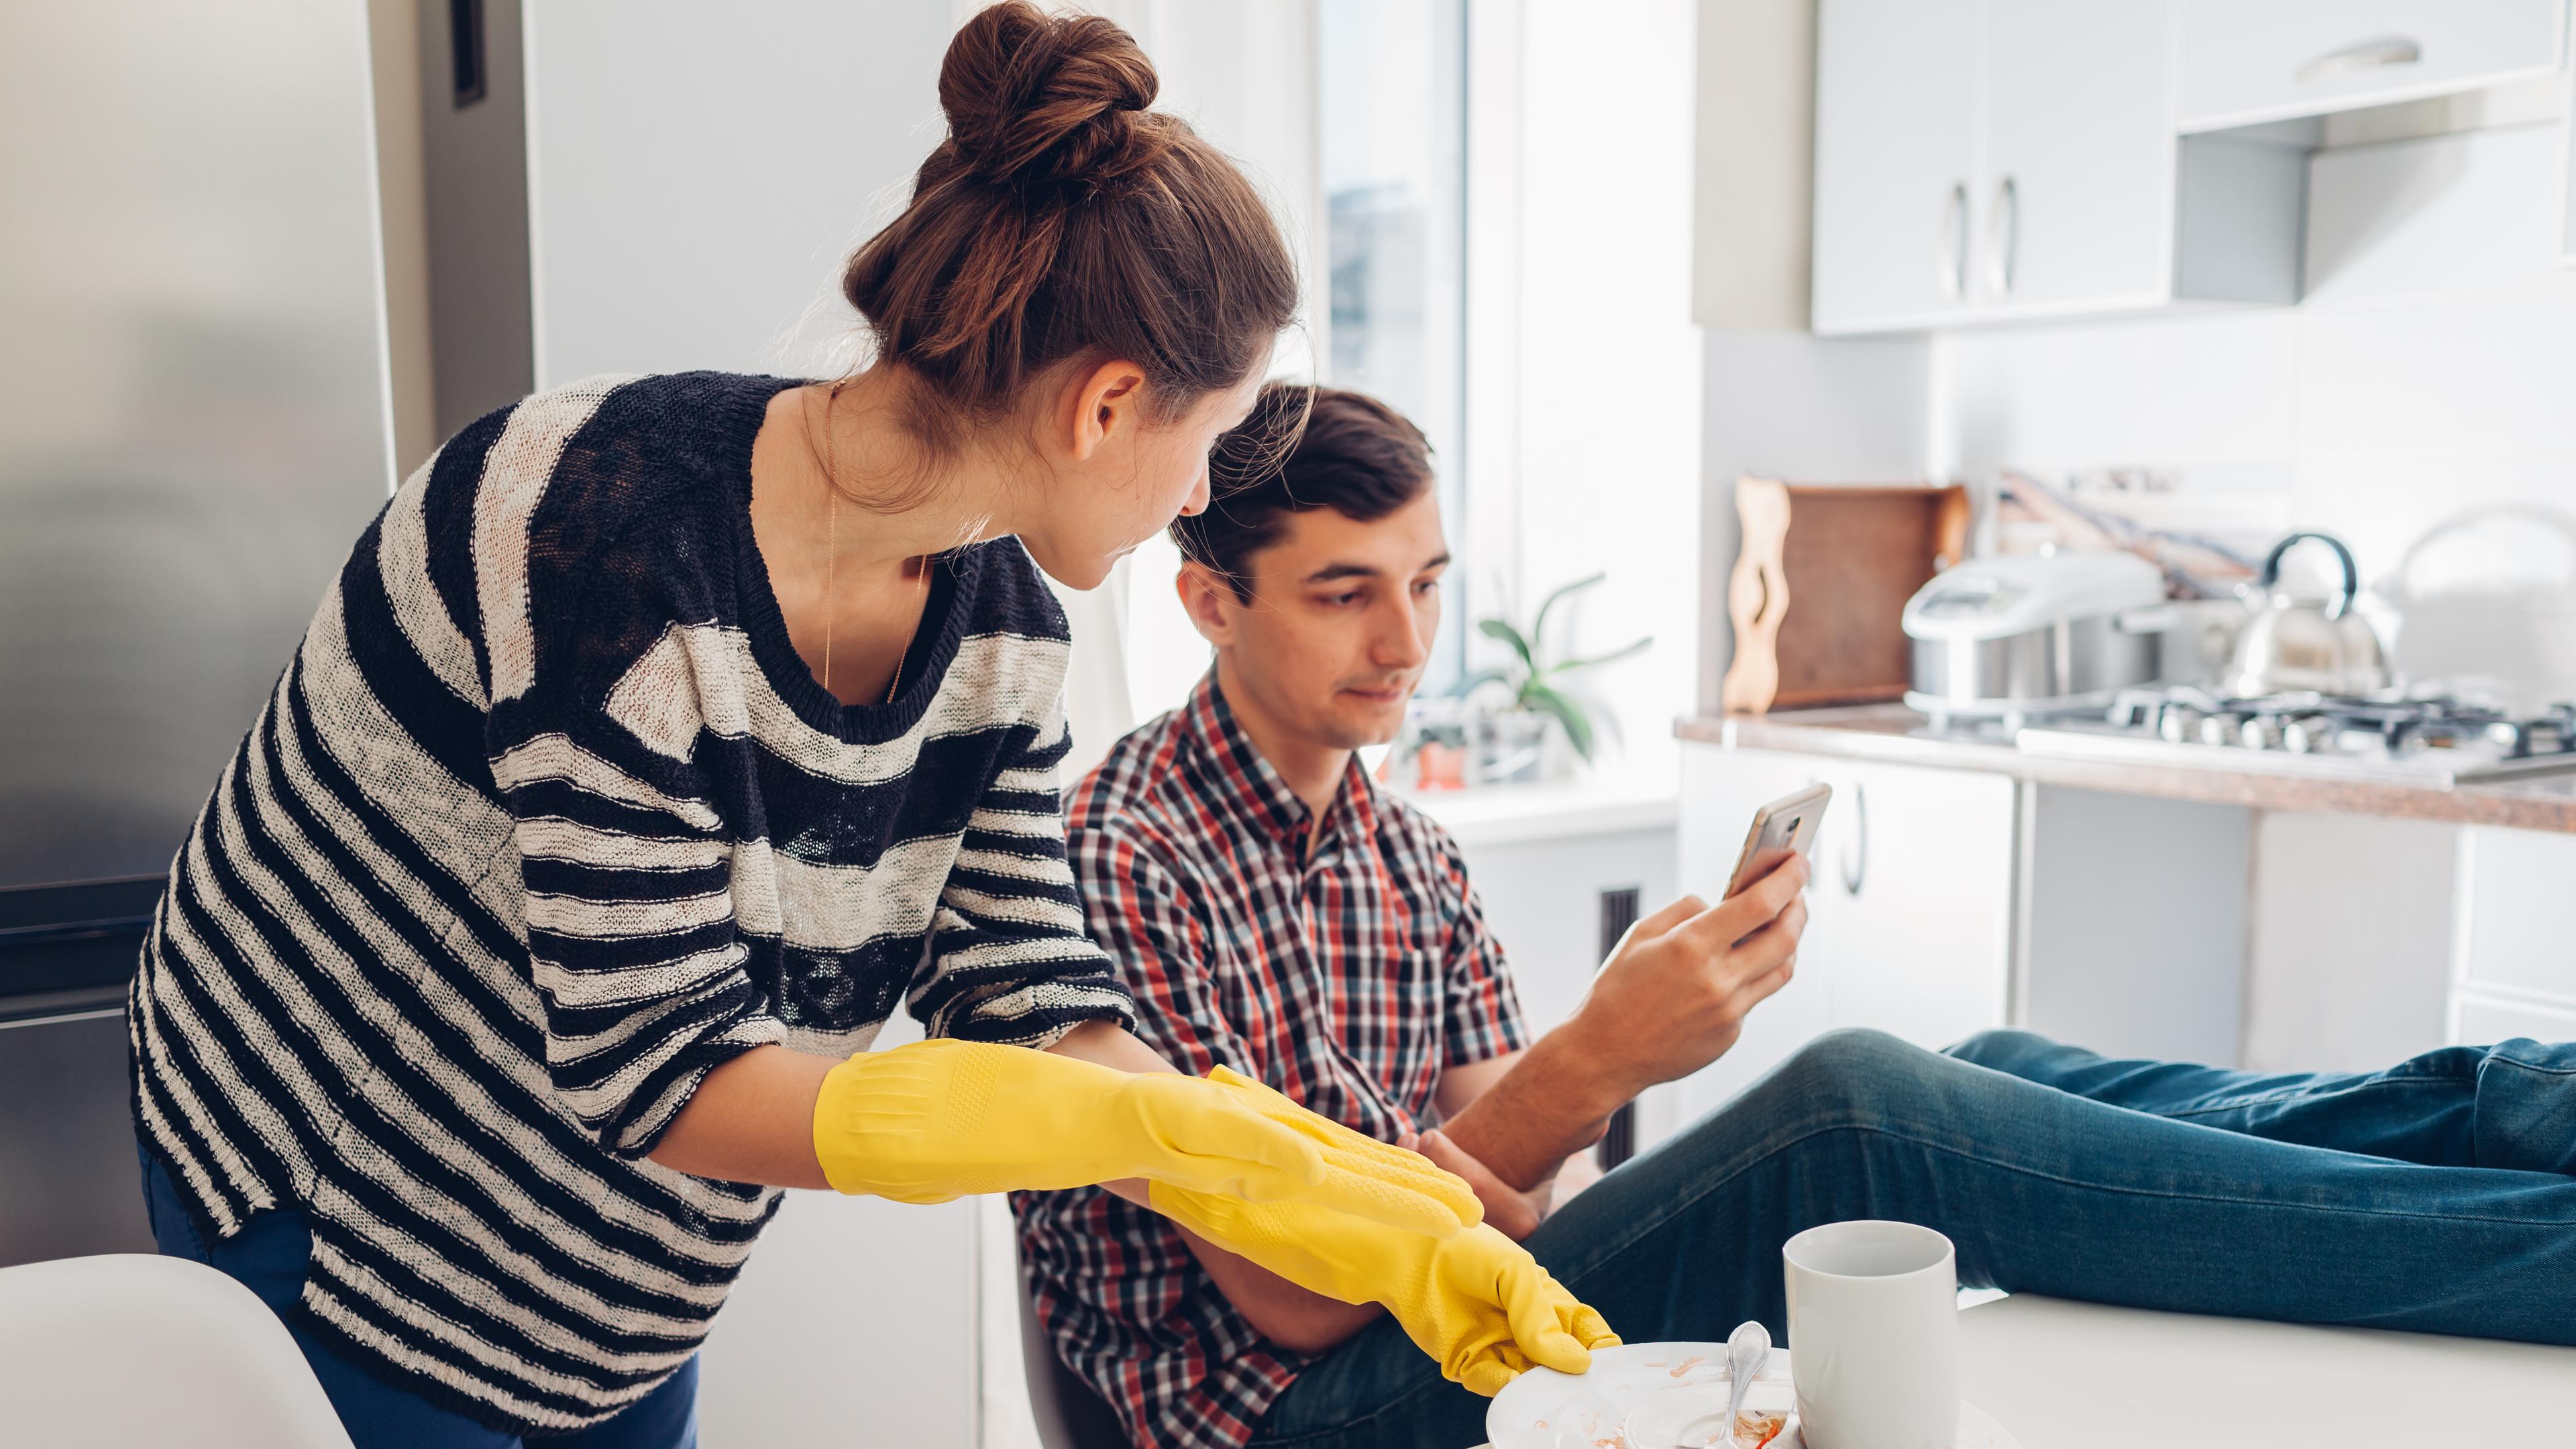 Eine Frau mit gelben Putzhandschuhen räumt dreckiges Geschirr ab, während ein Mann die Füße auf den Tisch gelegt hat und auf sein Handy schaut.